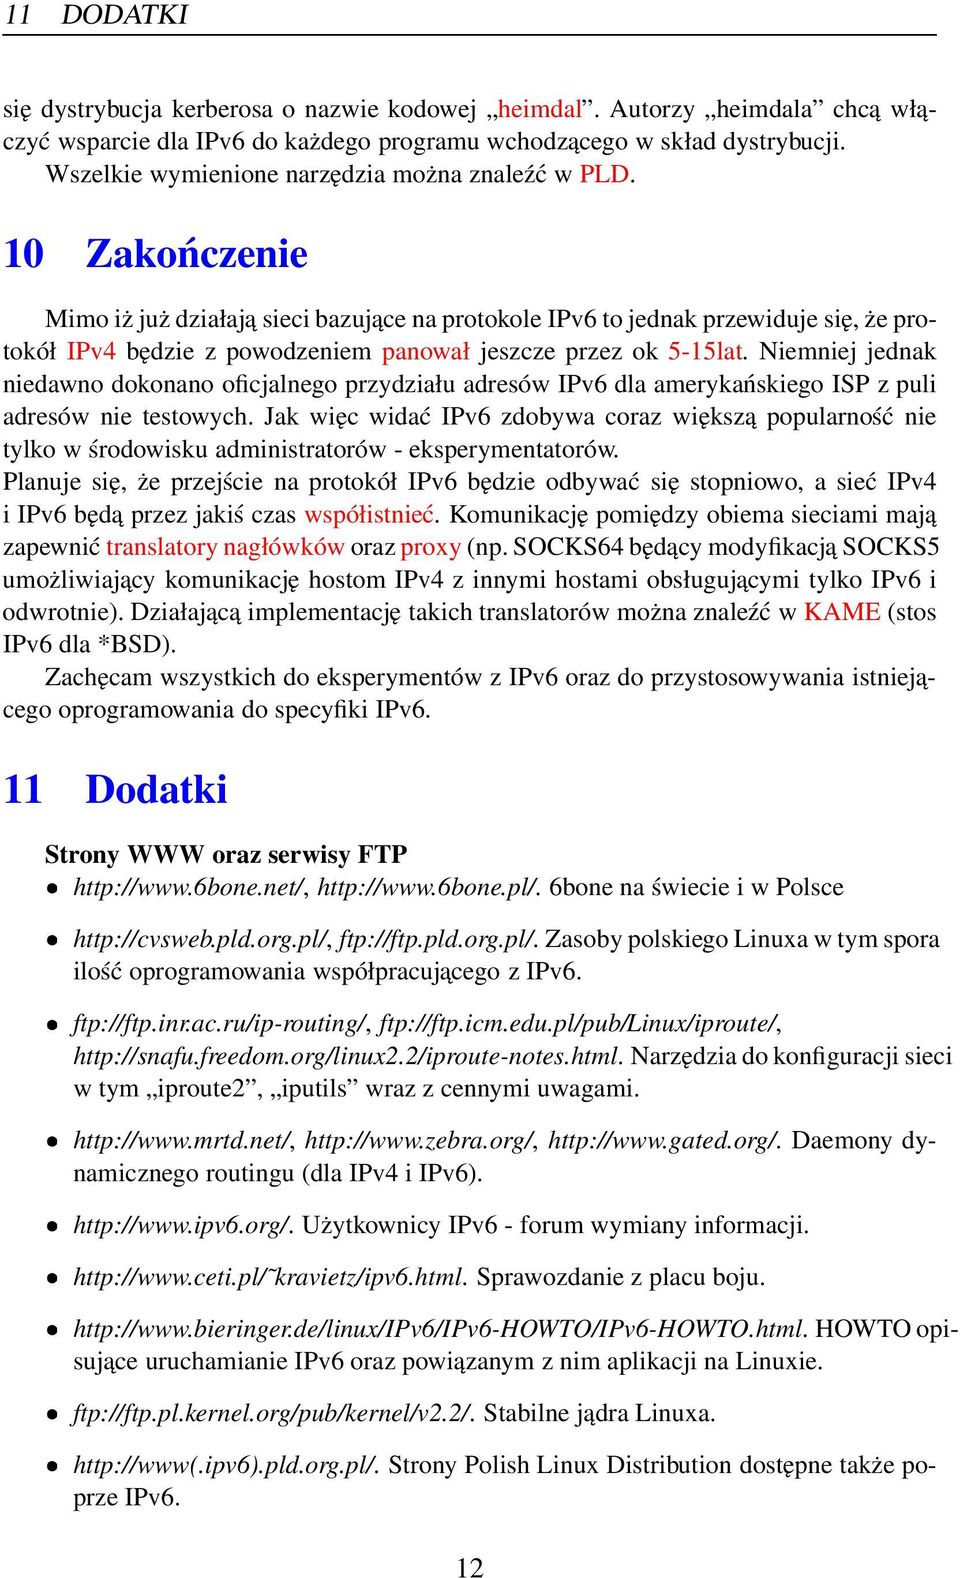 10 Zakończenie Mimo iż już działaja sieci bazujace na protokole IPv6 to jednak przewiduje się, że protokół IPv4 będzie z powodzeniem panował jeszcze przez ok 5-15lat.